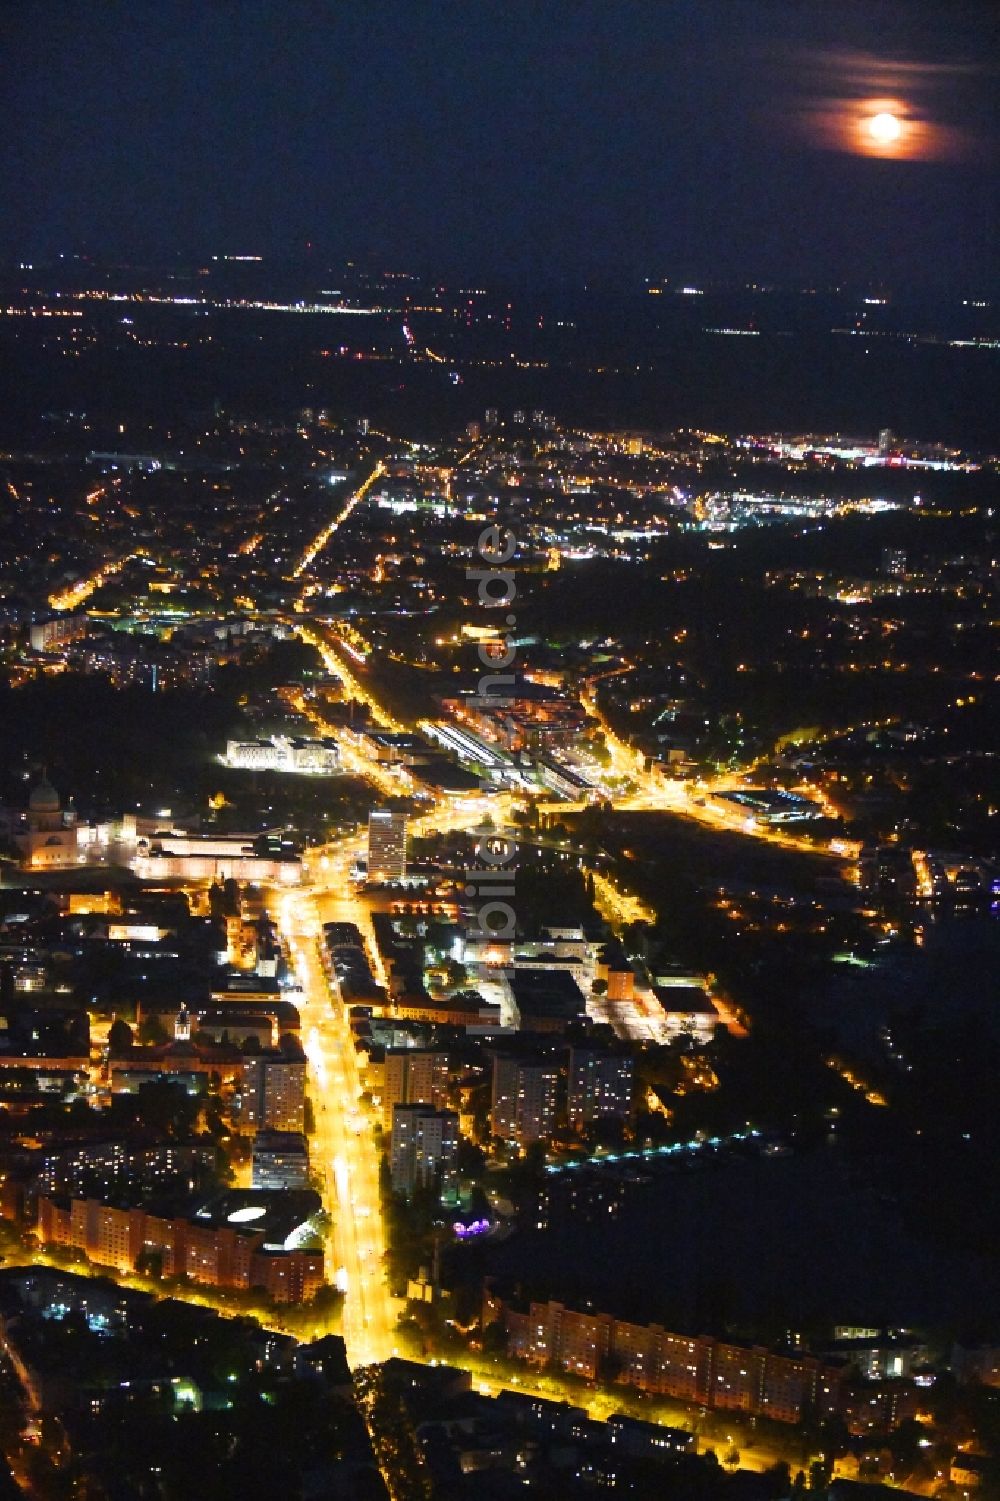 Nacht-Luftaufnahme Potsdam - Nachtluftbild Straßenführung Breite Straße im Ortsteil Nördliche Innenstadt in Potsdam im Bundesland Brandenburg, Deutschland